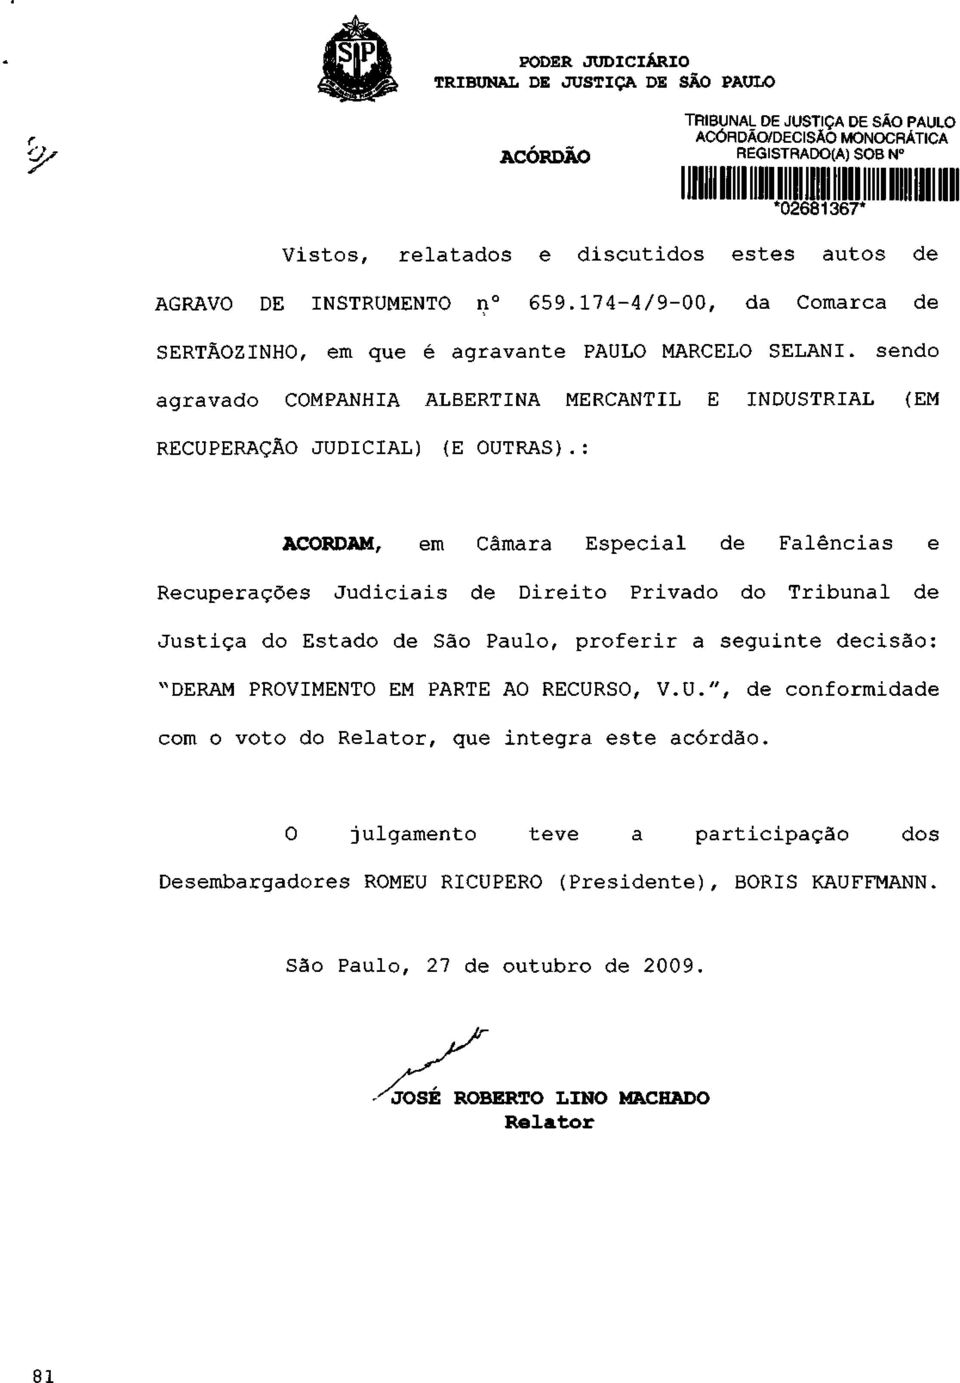 : ACORDAM, em Câmara Especial de Falências e Recuperações Judiciais de Direito Privado do Tribunal de Justiça do Estado de São Paulo, proferir a seguinte decisão: "DERAM PROVIMENTO EM PARTE AO